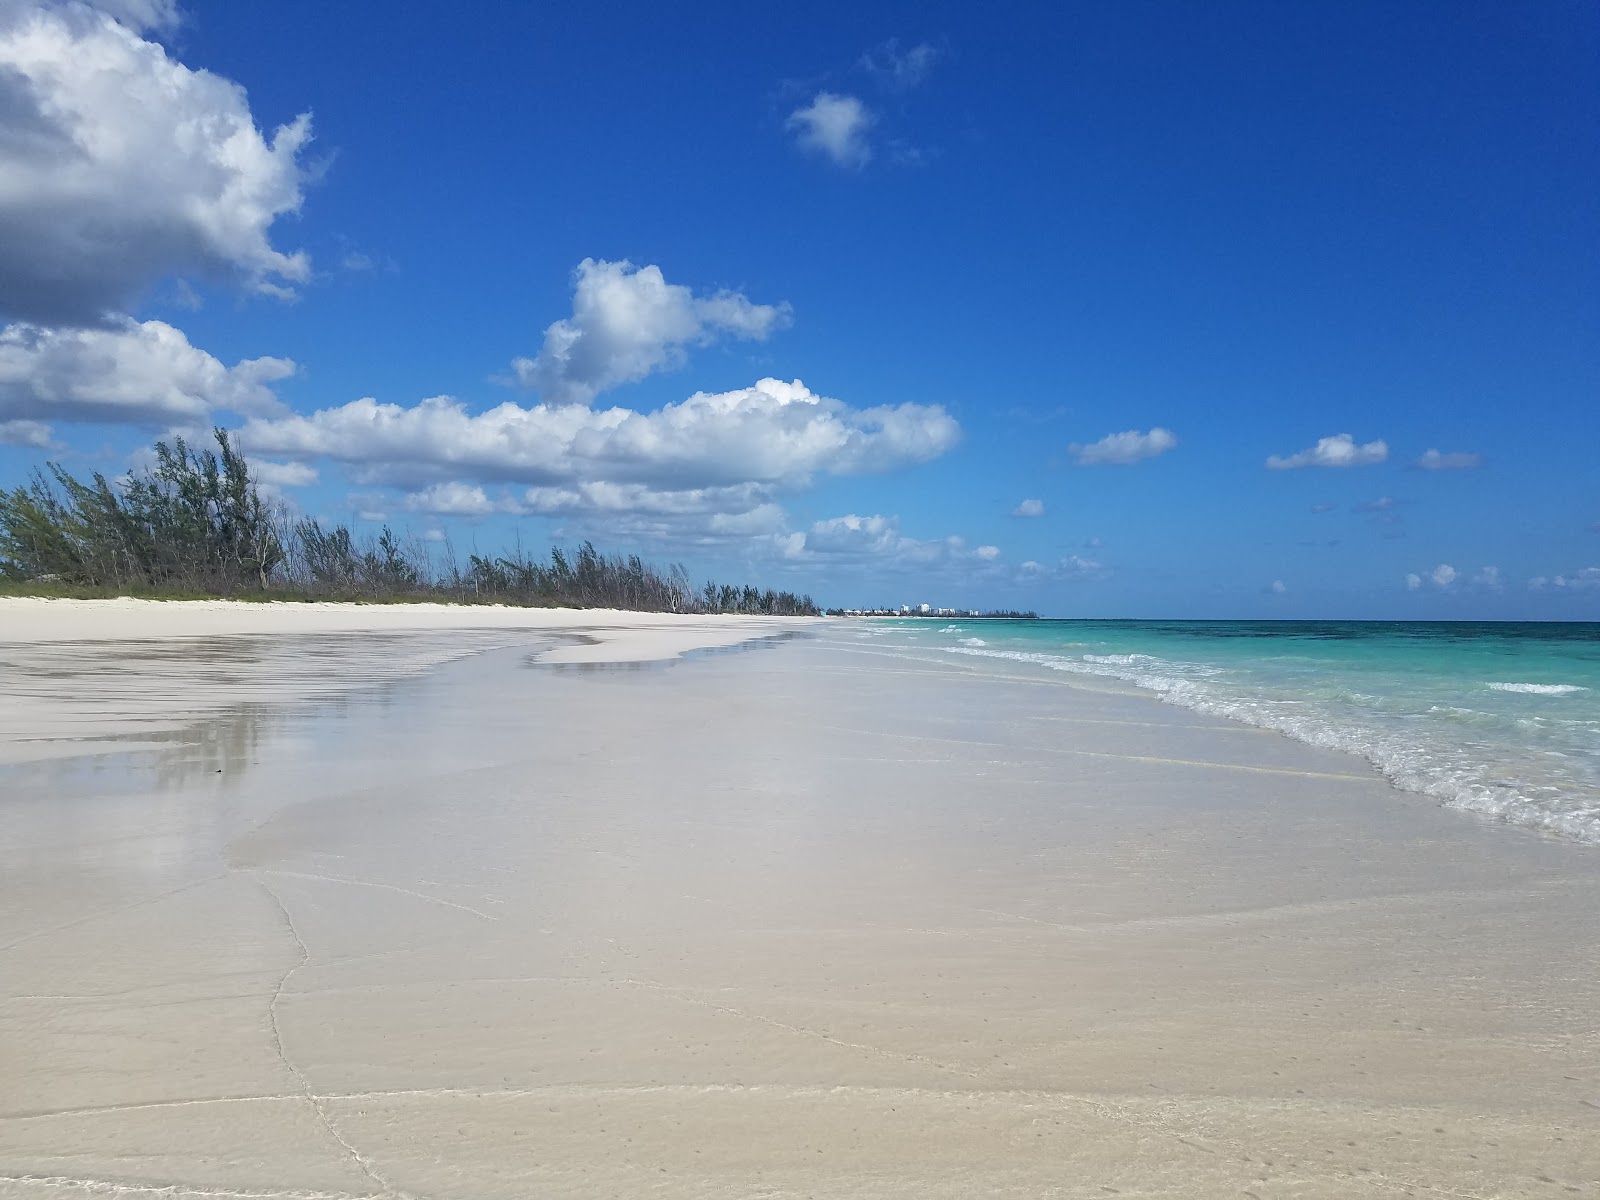 Zdjęcie East Palm beach z powierzchnią jasny, drobny piasek